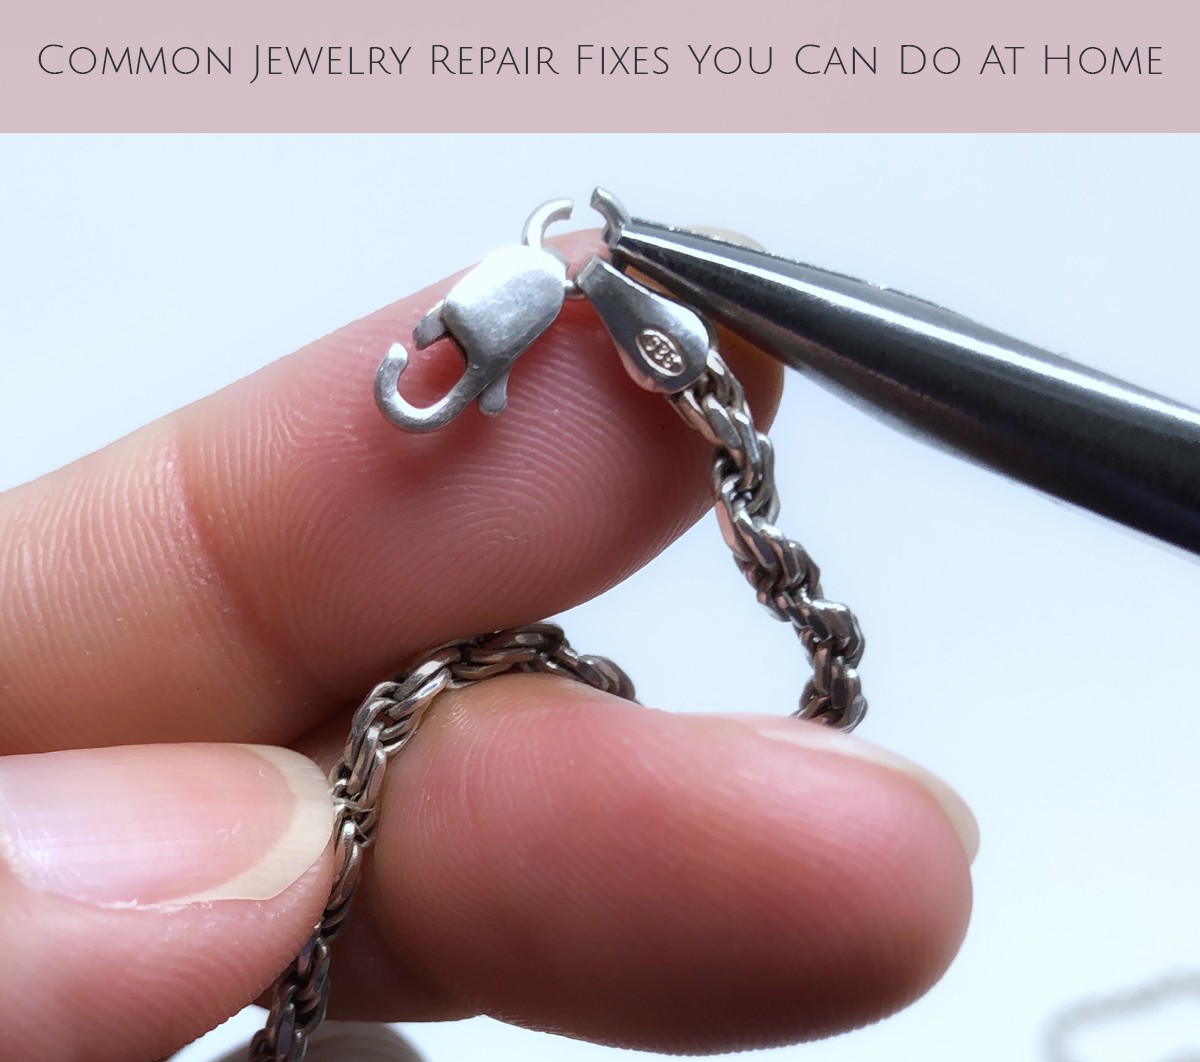 Basic Jewelry Repair